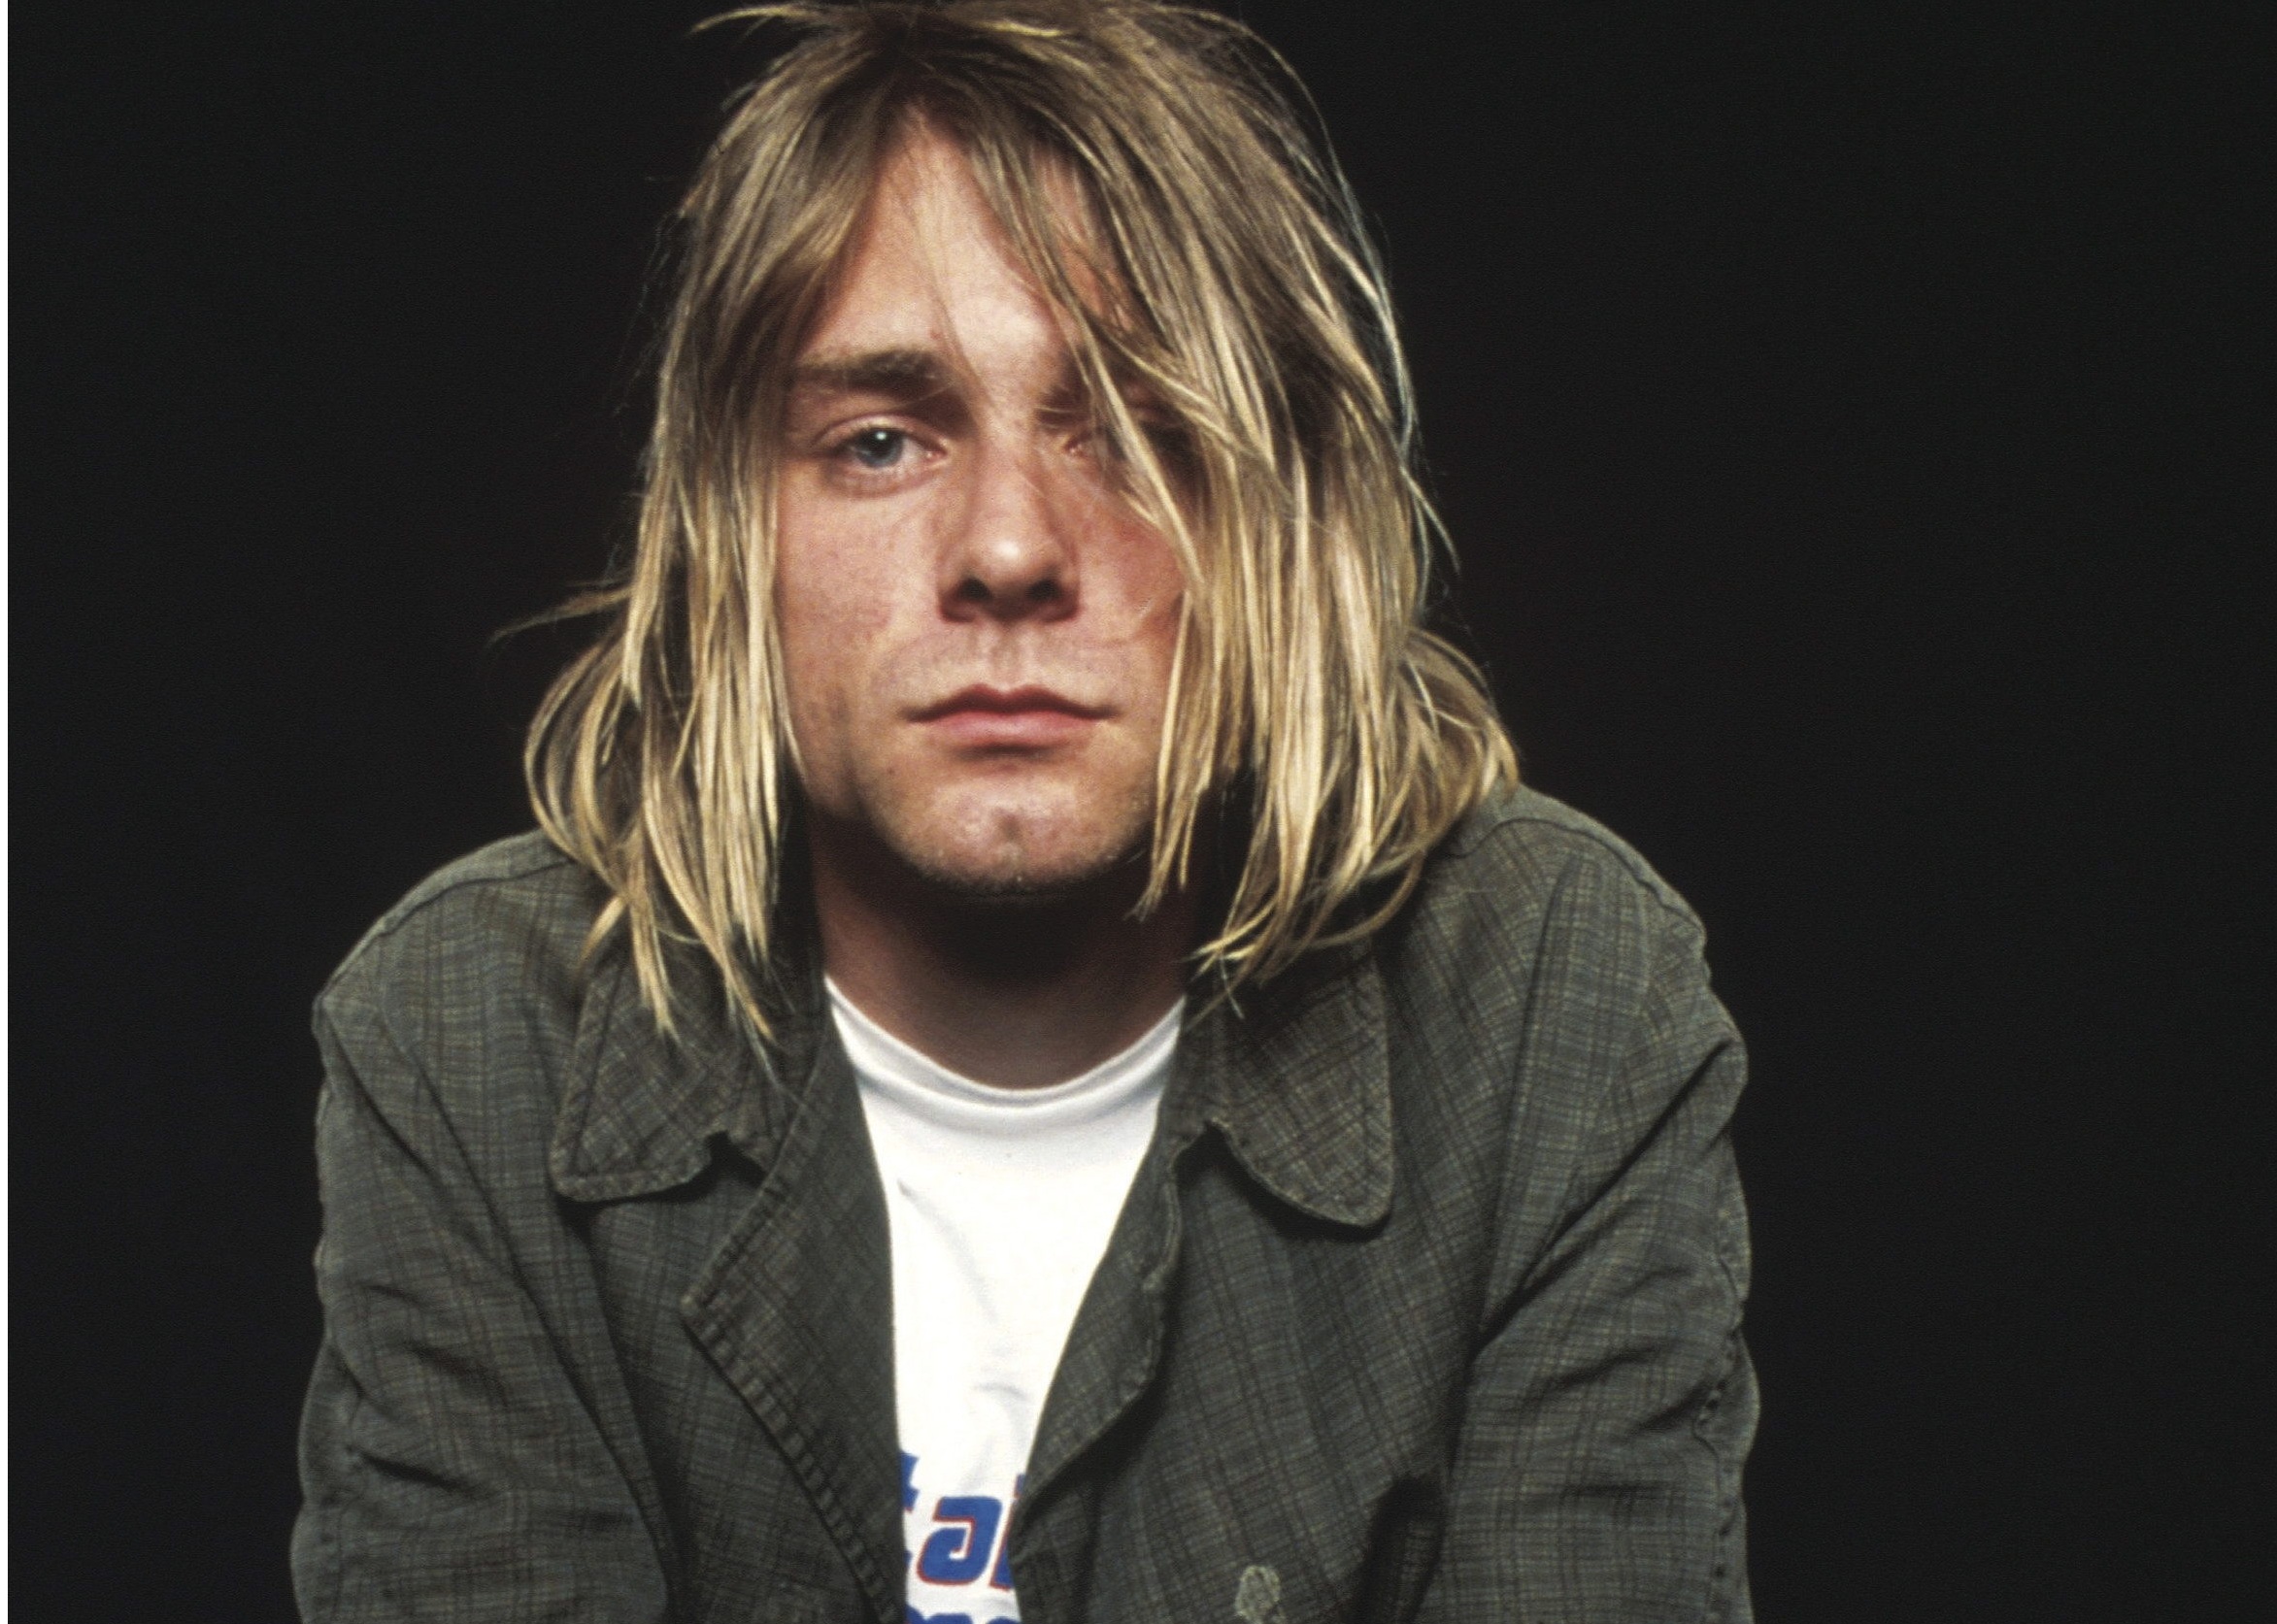 Subastarán la guitarra que usó Kurt Cobain en el legendario “Unplugged” de Nirvana